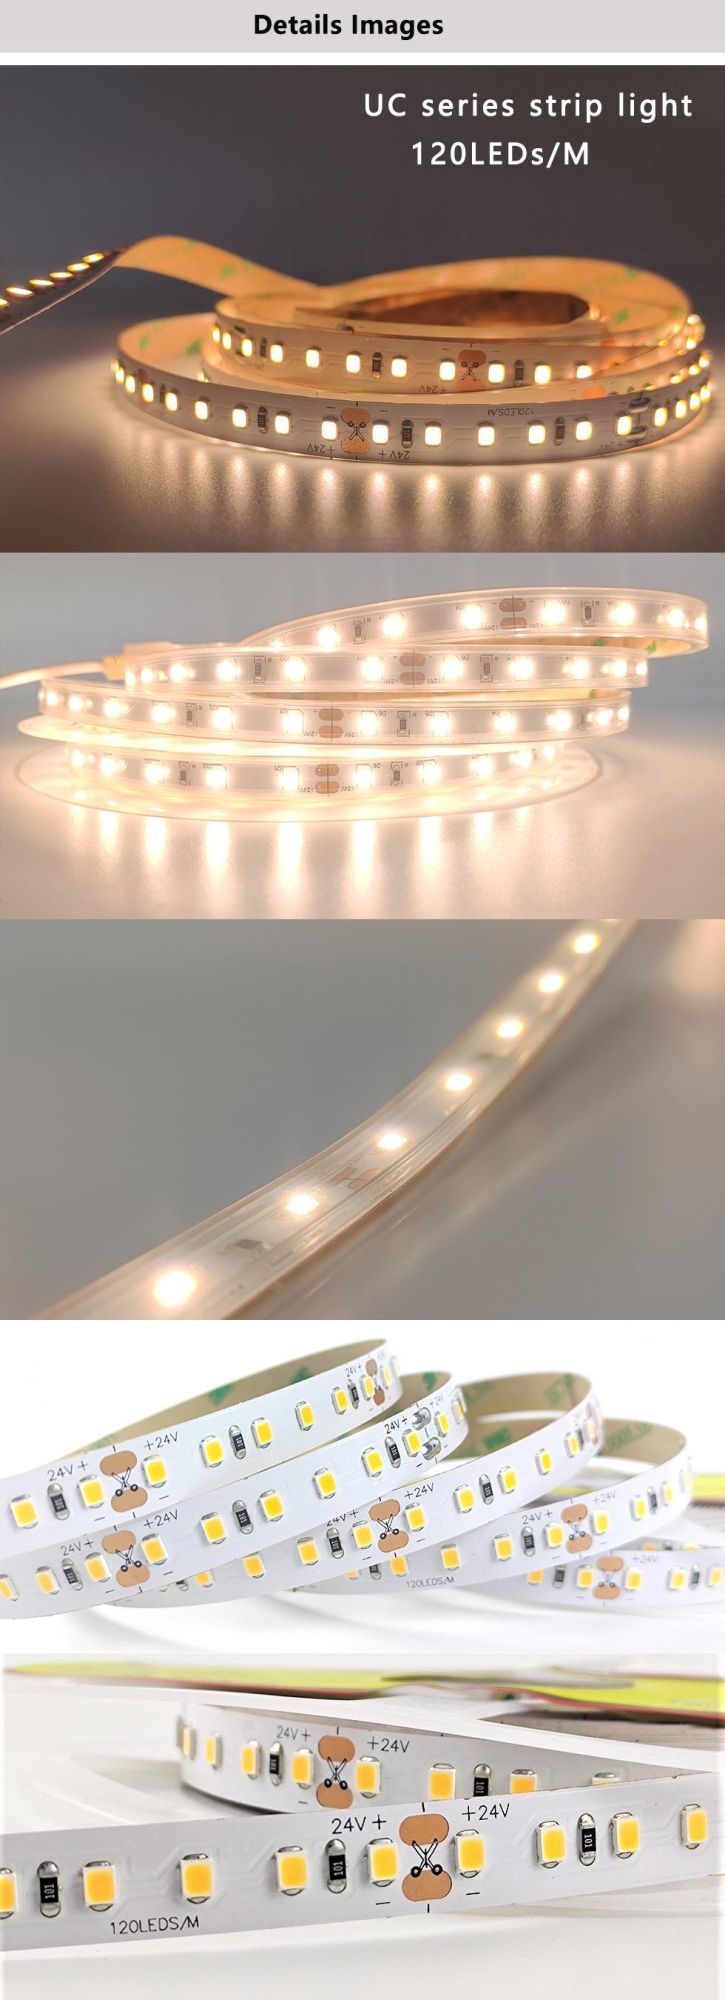 LED Strip Light for Ceiling Lighting